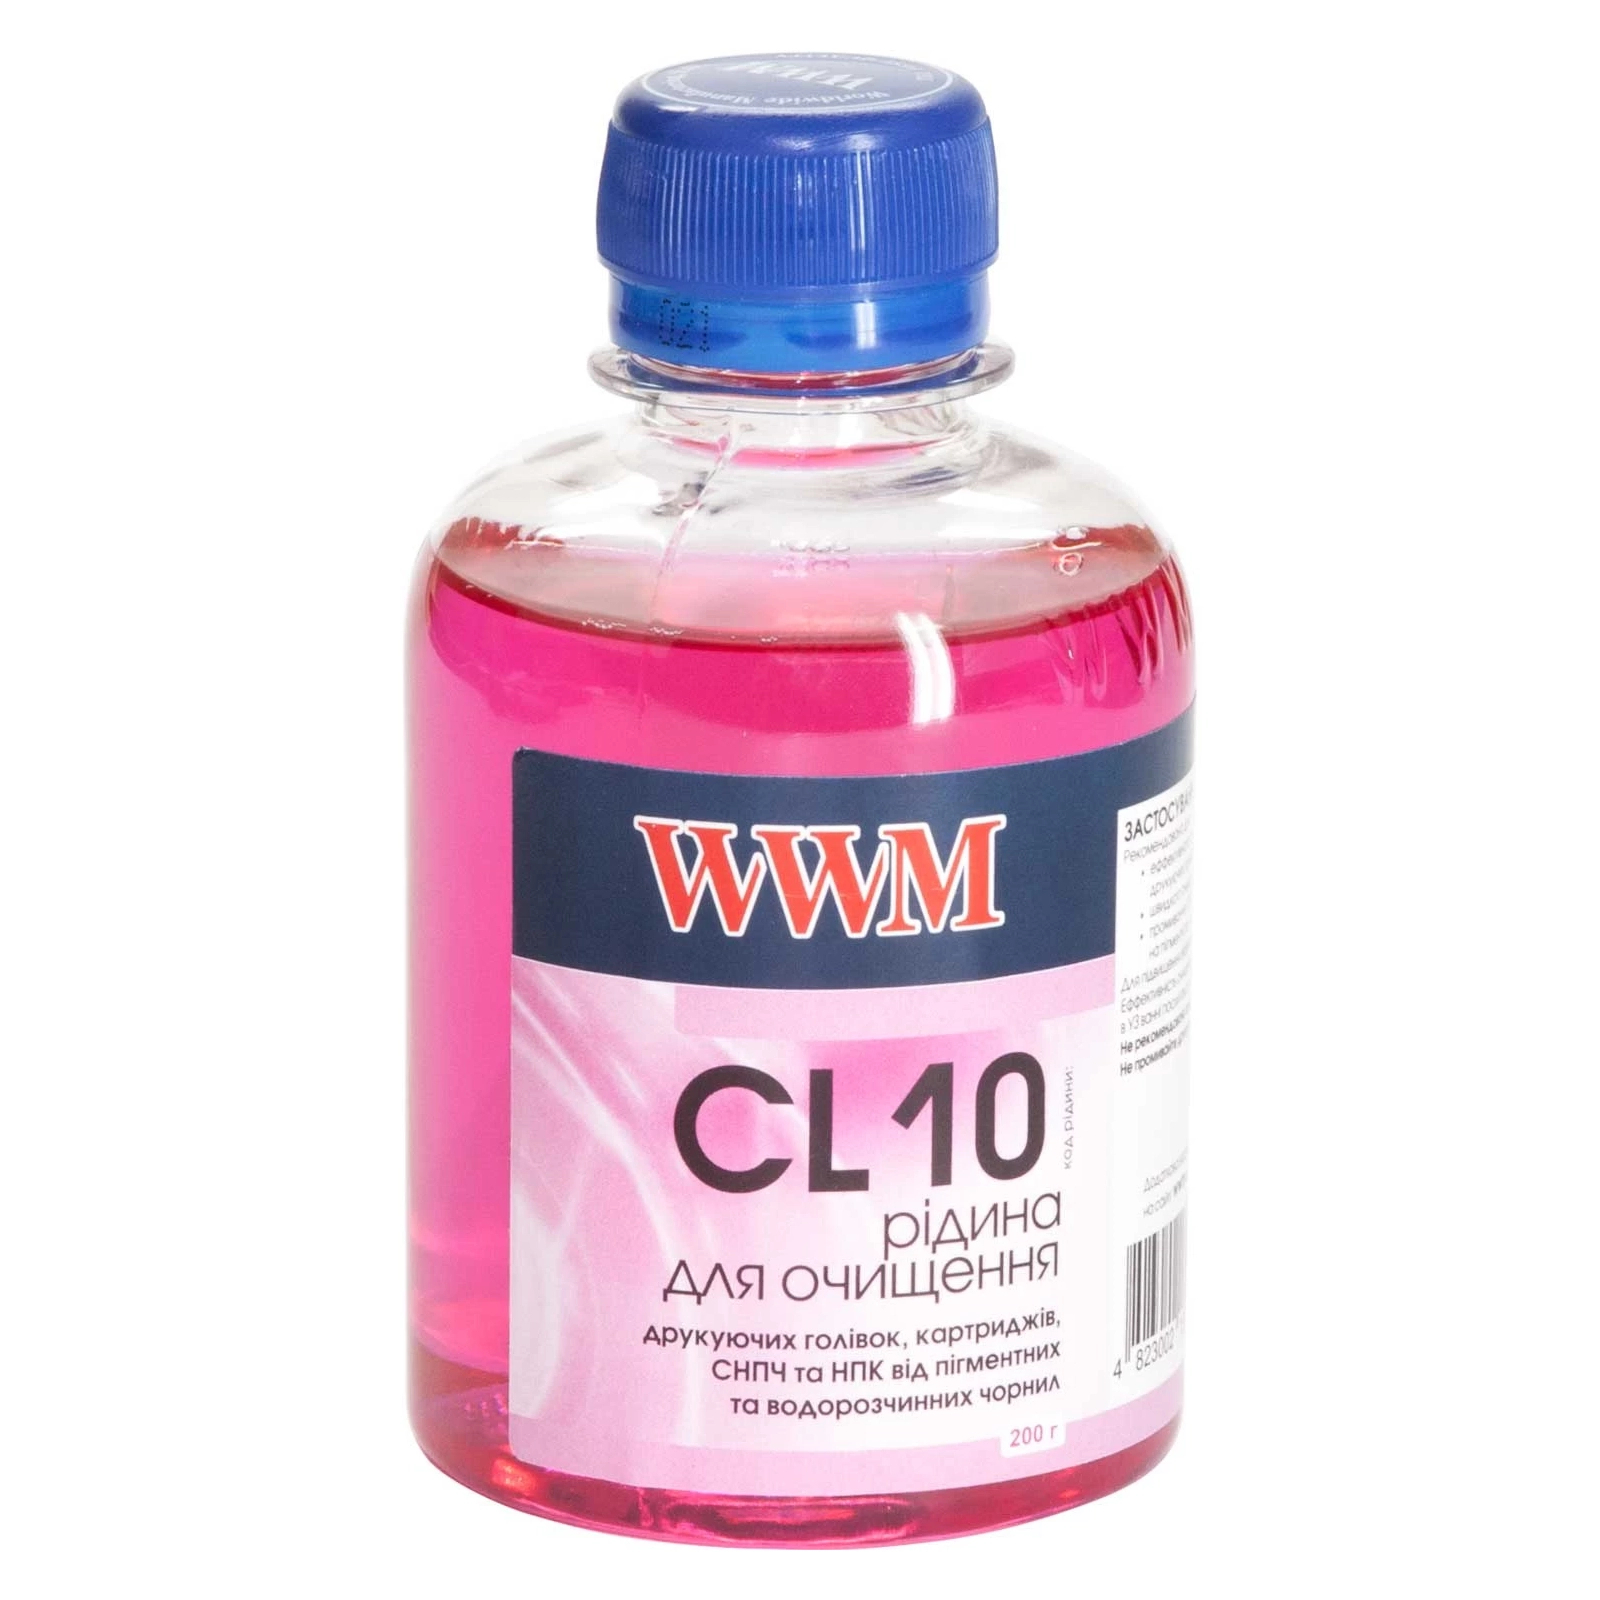 Рідина для очистки WWM pigment color /200г (CL10)